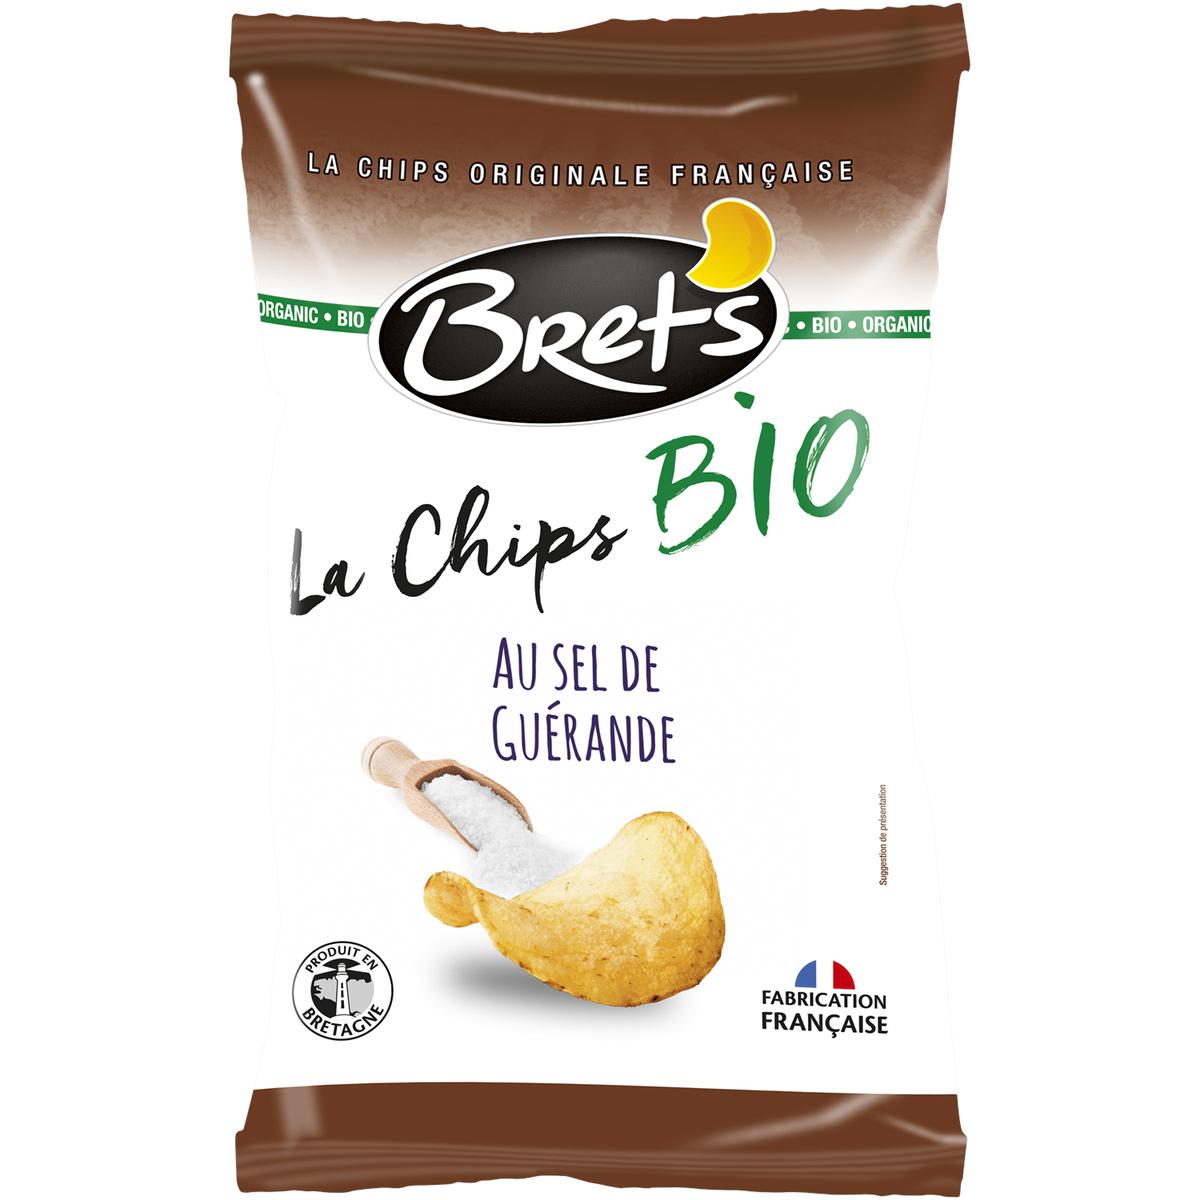 La chips de légumes - Bret's